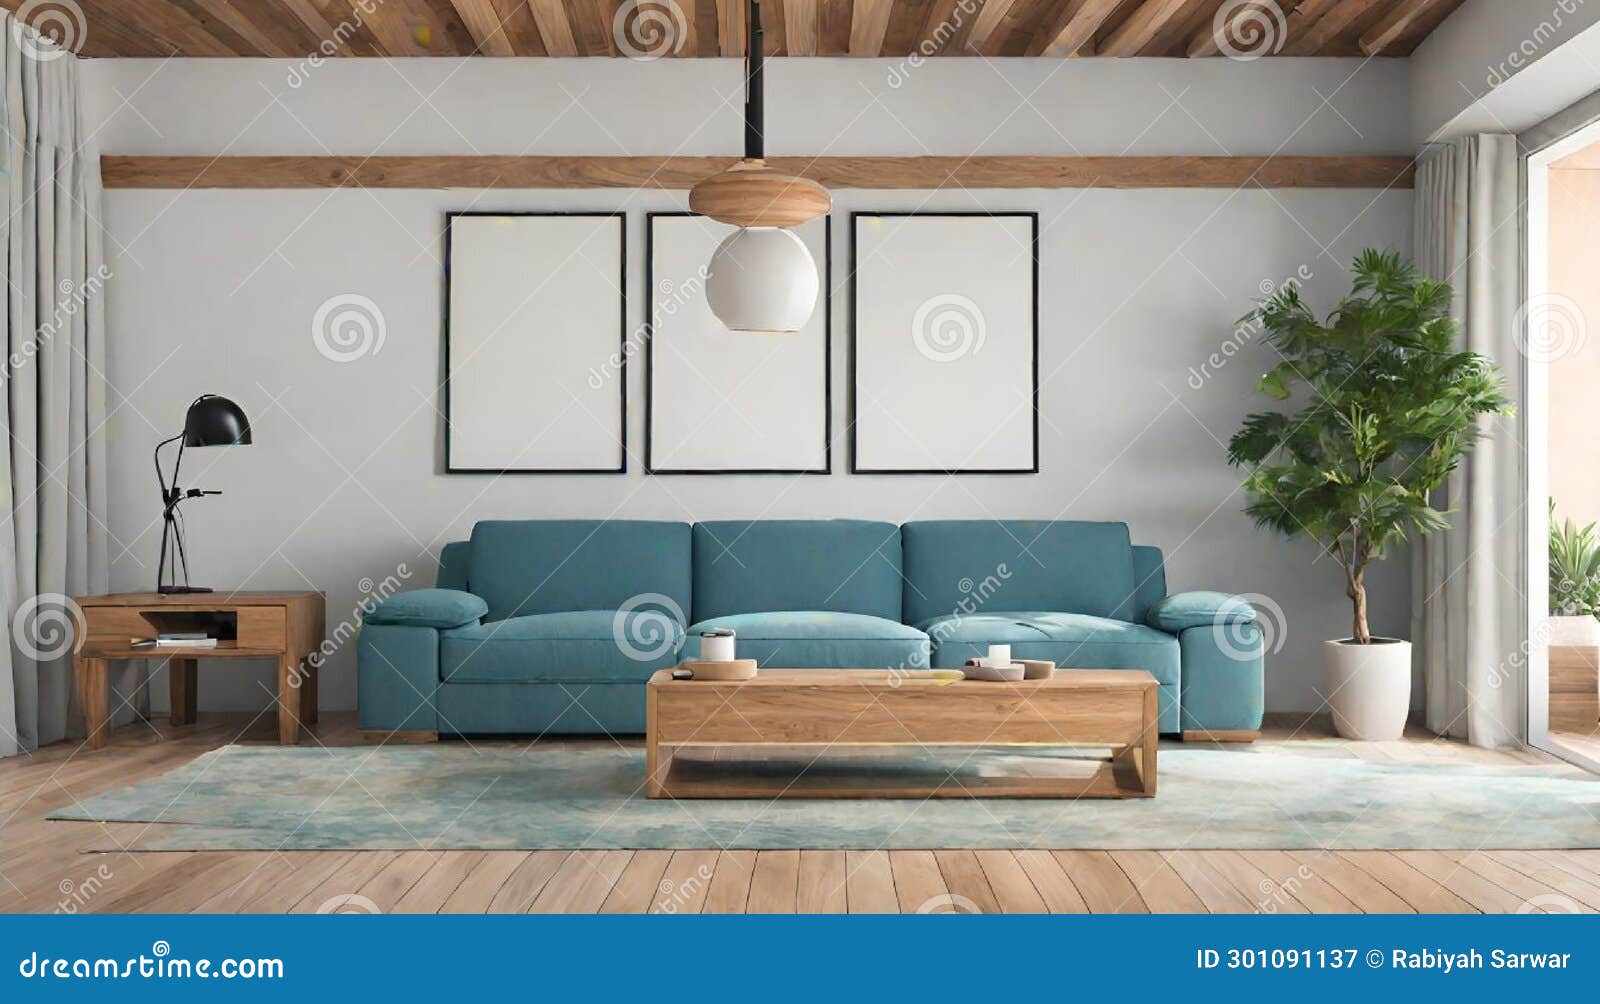 moderno salÃ³n frontal con sofÃ¡ y estanterÃ­as de madera en tonos azules. ilustraciÃ³n generativa